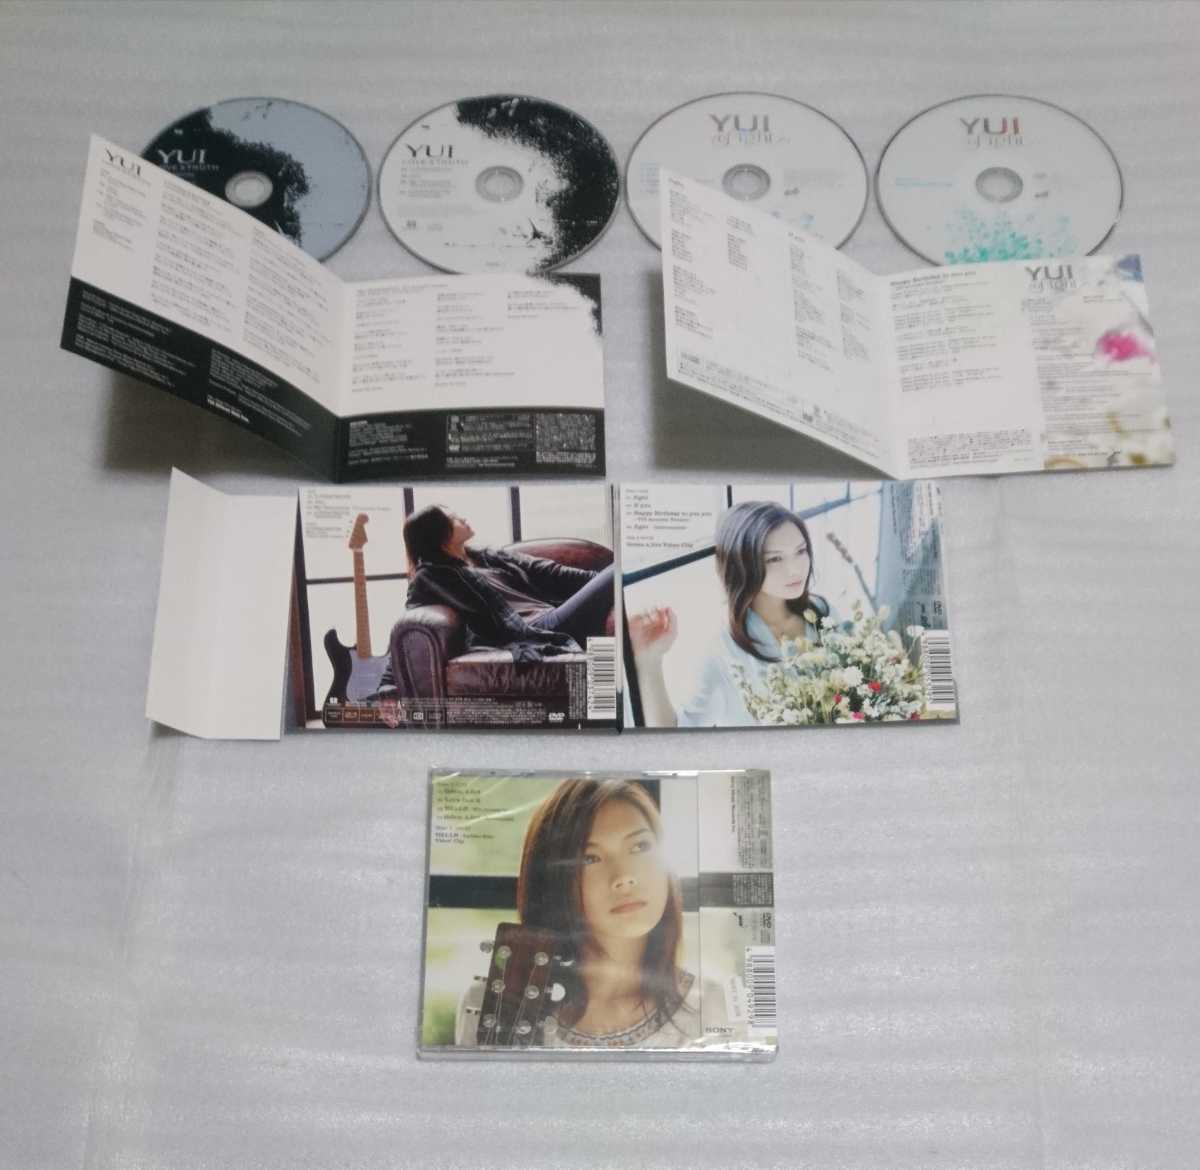 未開封含YUI初回限定盤DVD付 シングル CD 3枚 映画主題歌バラード LOVE & TRUTH HELLO アコースティック収録 Green a.live NHKテーマ fight_※DVD、CDとも複数回、操作確認済みです。